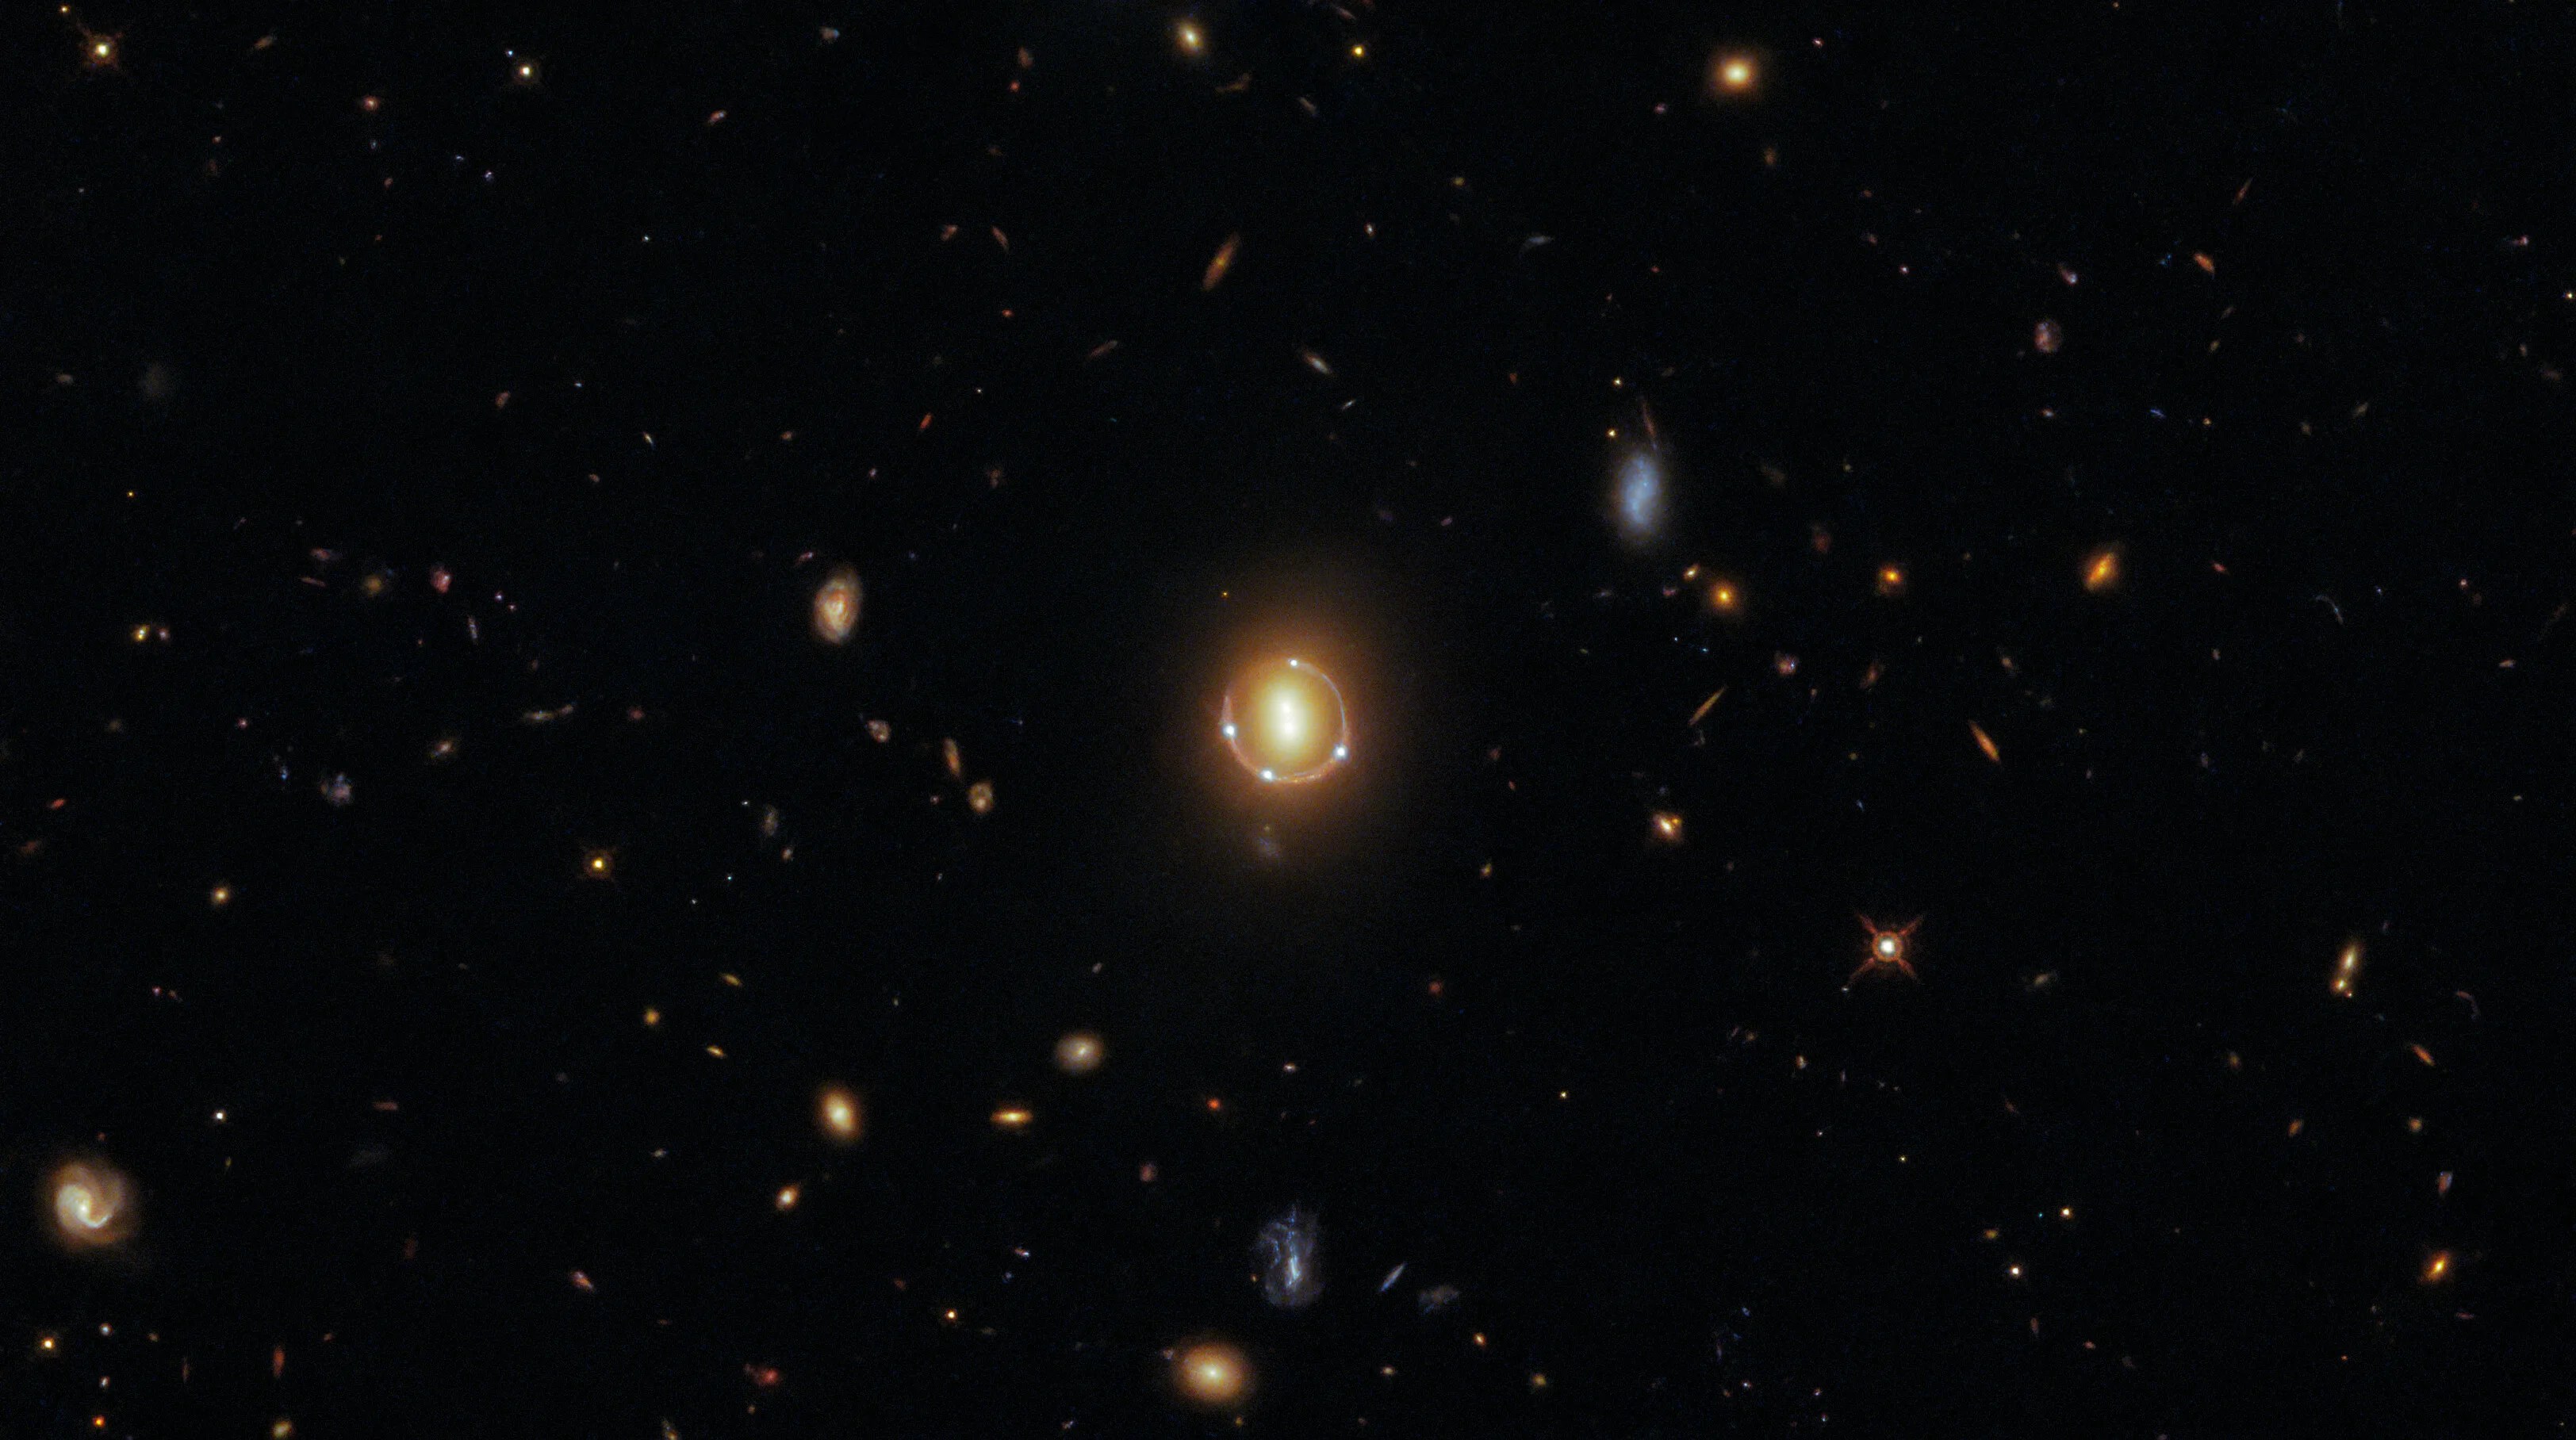 Hubble sees quintuple